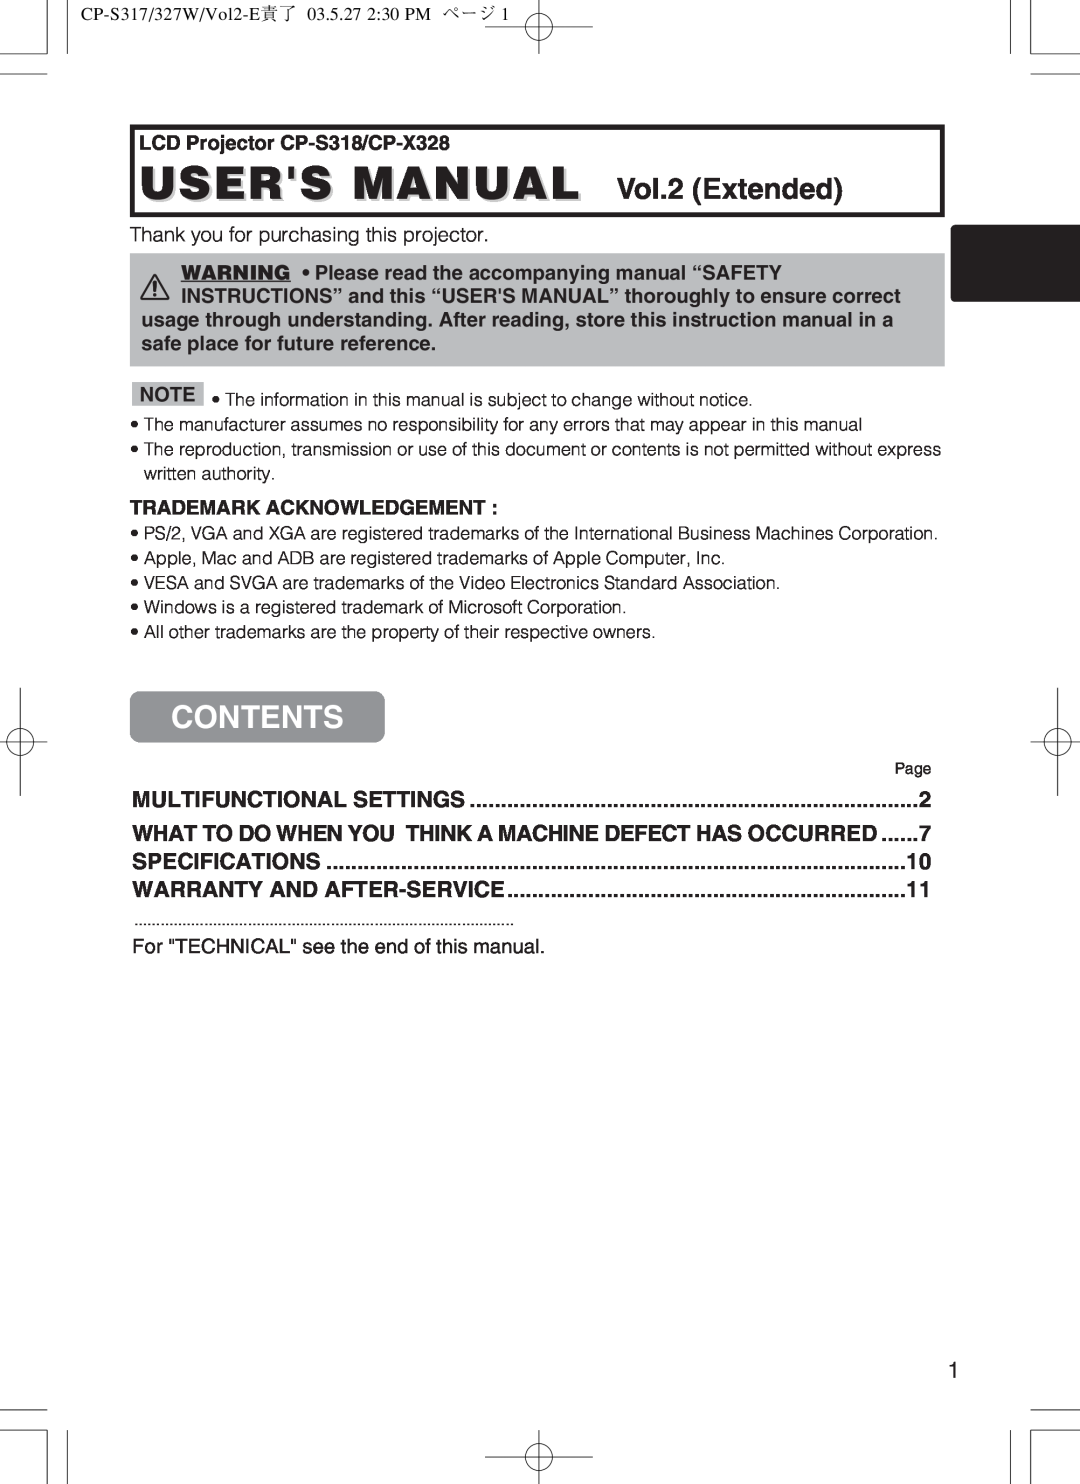 Hitachi cp-s318 user manual Contents, CP-S317/327W/Vol2-E責了 03.5.27 230 PM ページ 